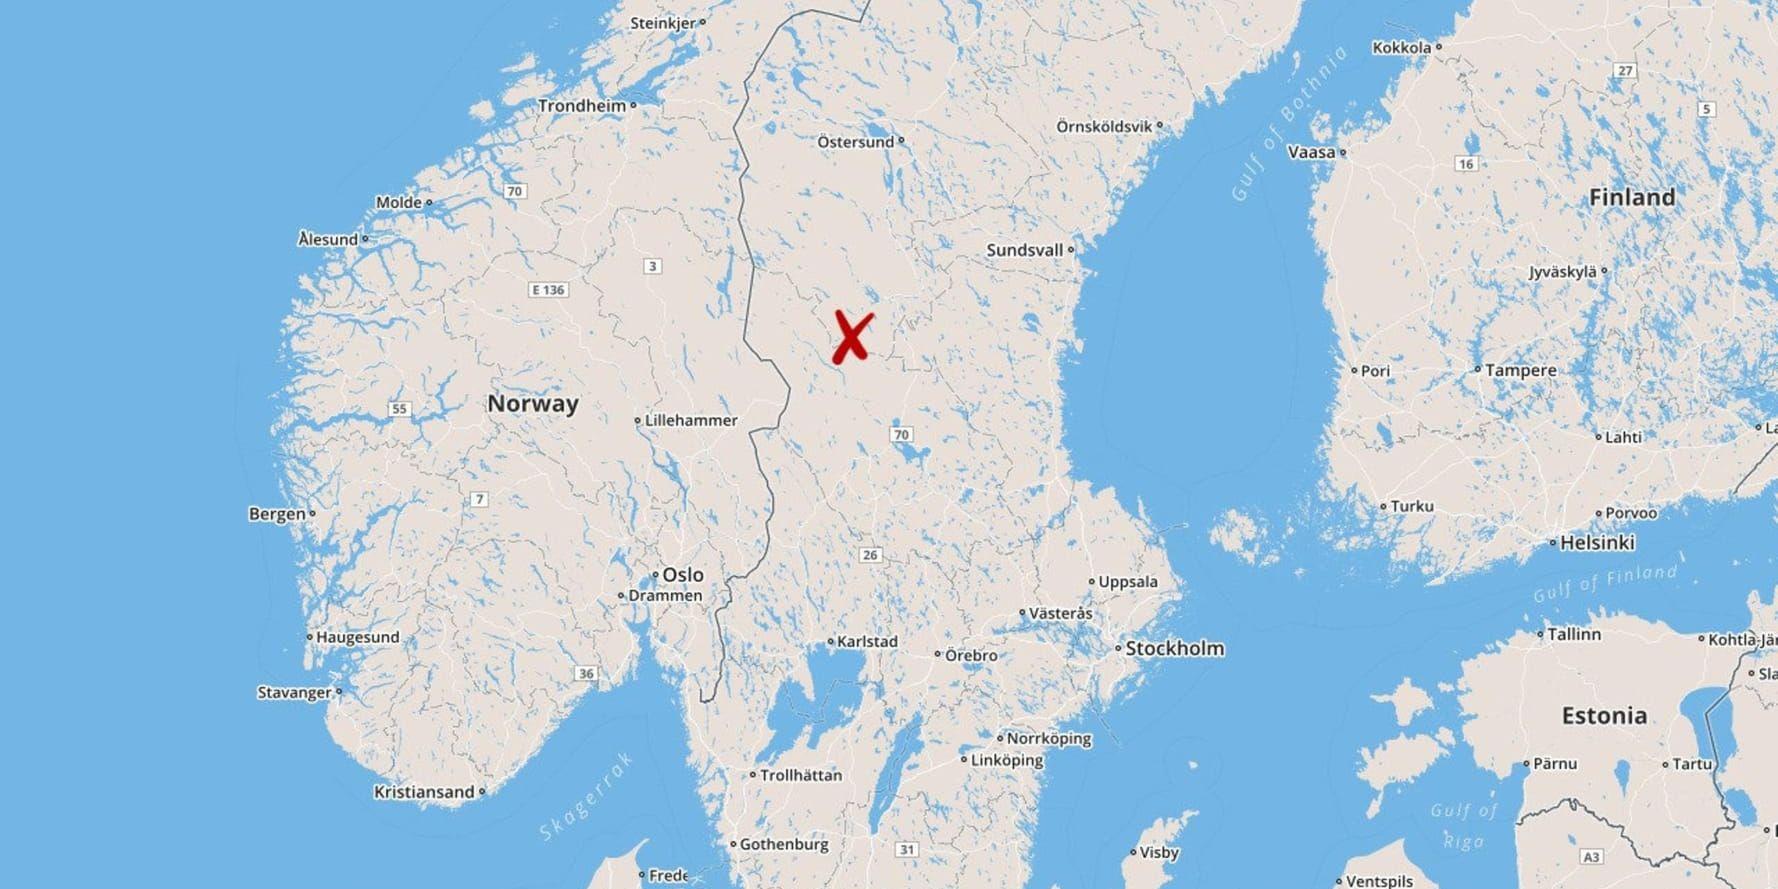 Länsstyrelsen i Jämtland har beslutat om skyddsjakt på två vargar som befinner sig söder om Lillhärdal.